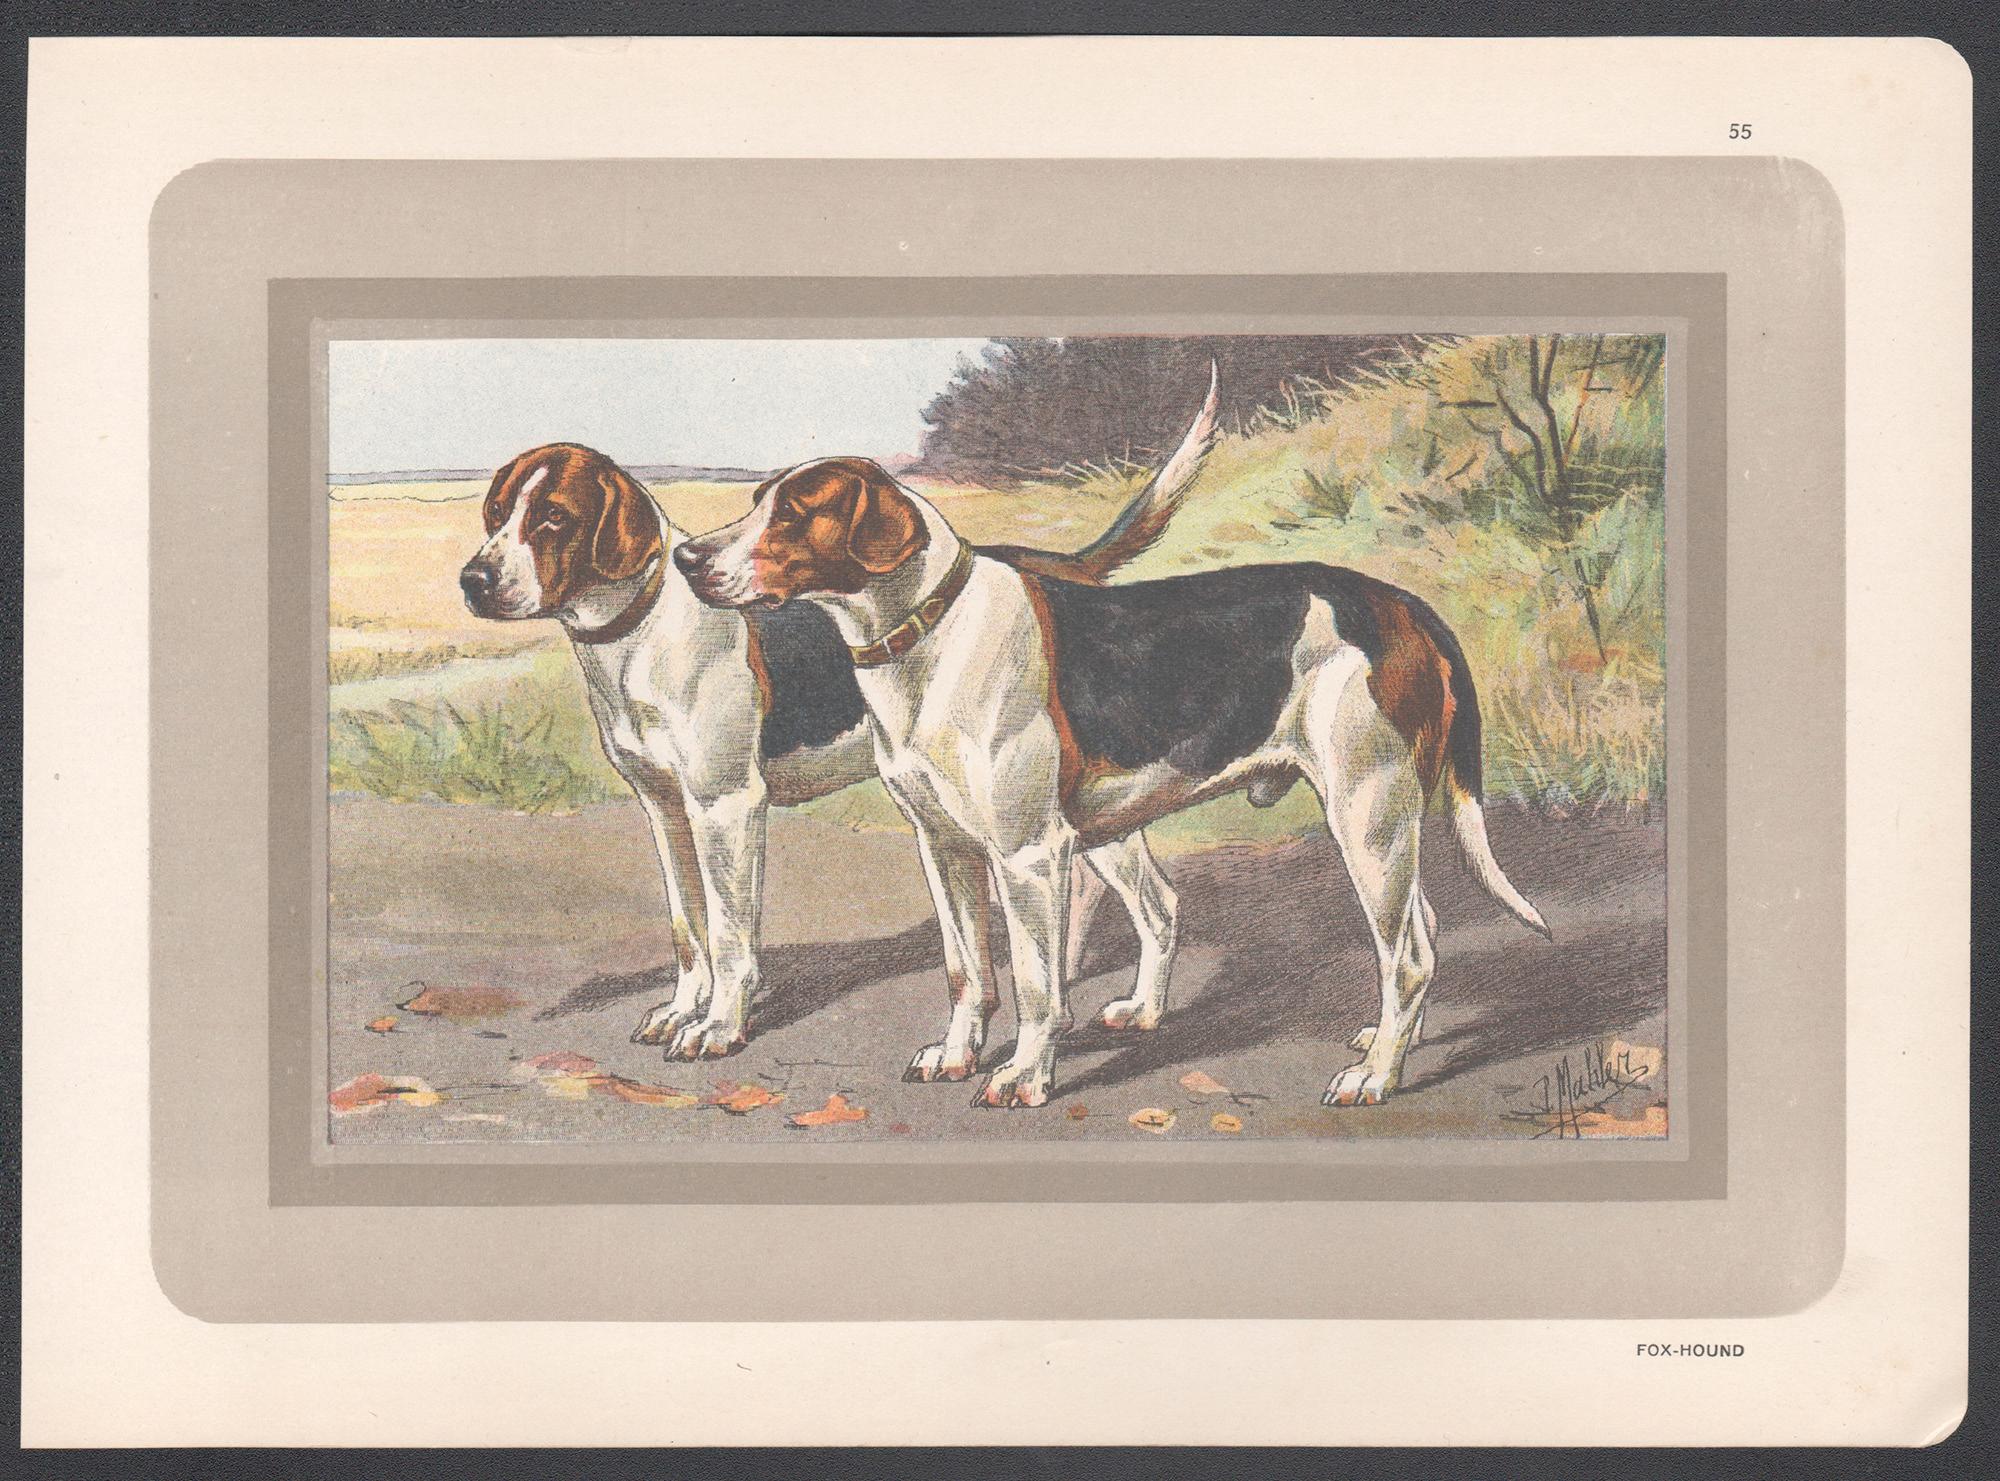 Impression chromolithographie de chien de renard, chien de chasse français, 1931 - Print de P. Mahler